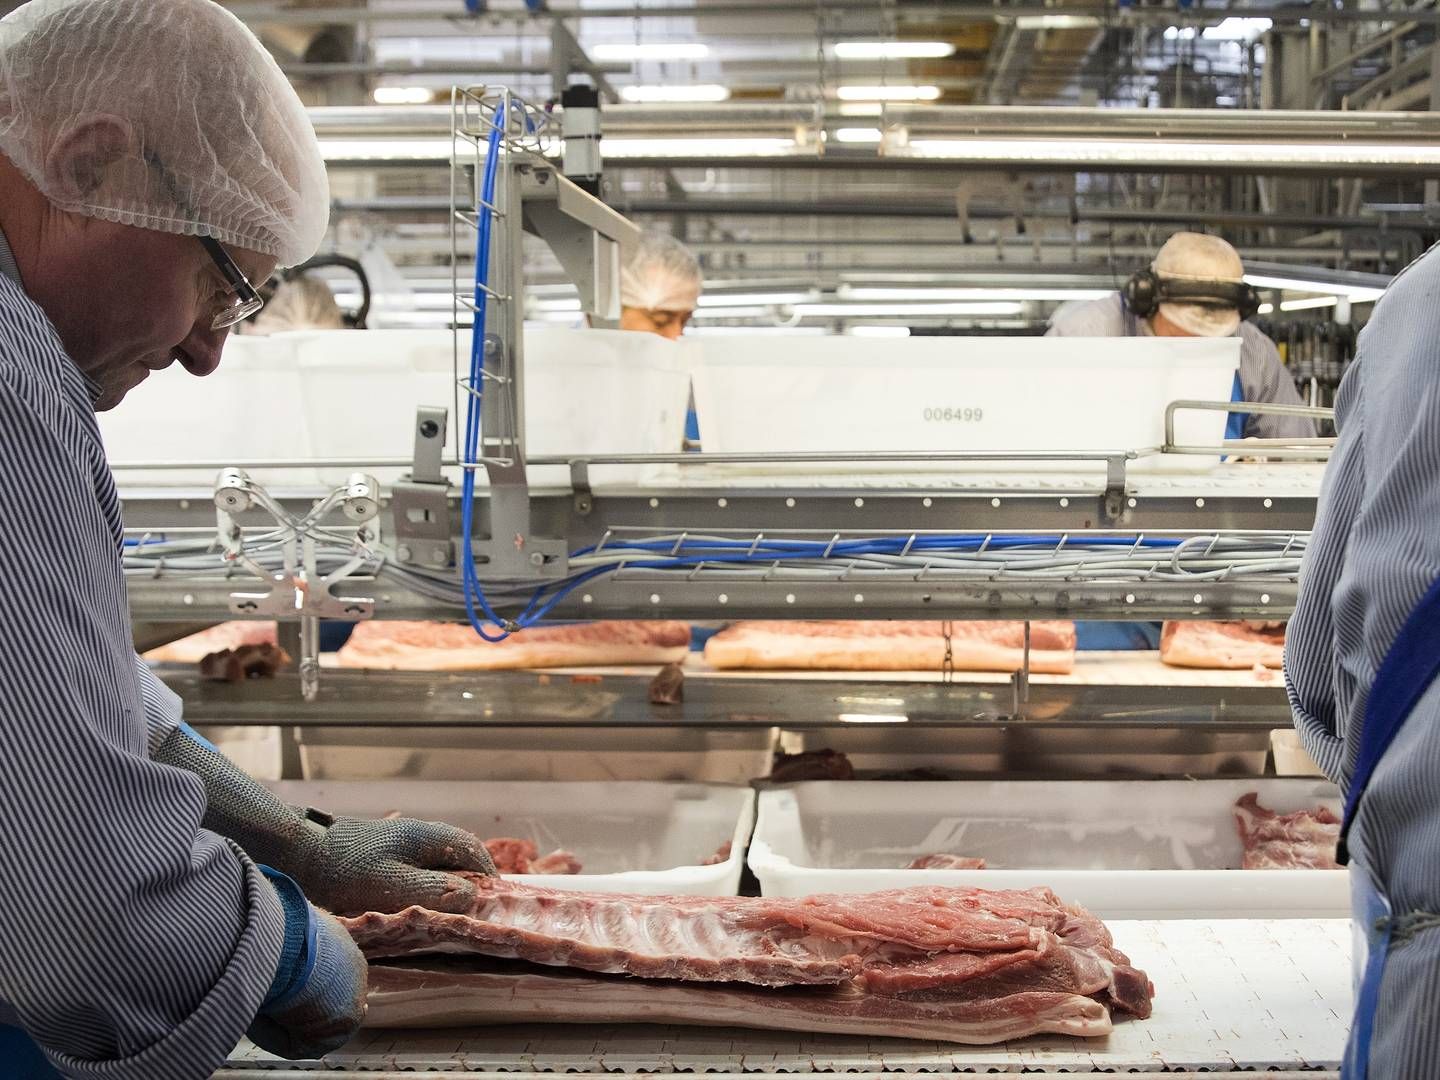 Danish Crowns slagterier anvender naturgas i en række processer og er derfor afhængige af alternativer, hvis der skulle blive lukket for forsyningerne som følge af mangel. | Foto: Finn Frandsen